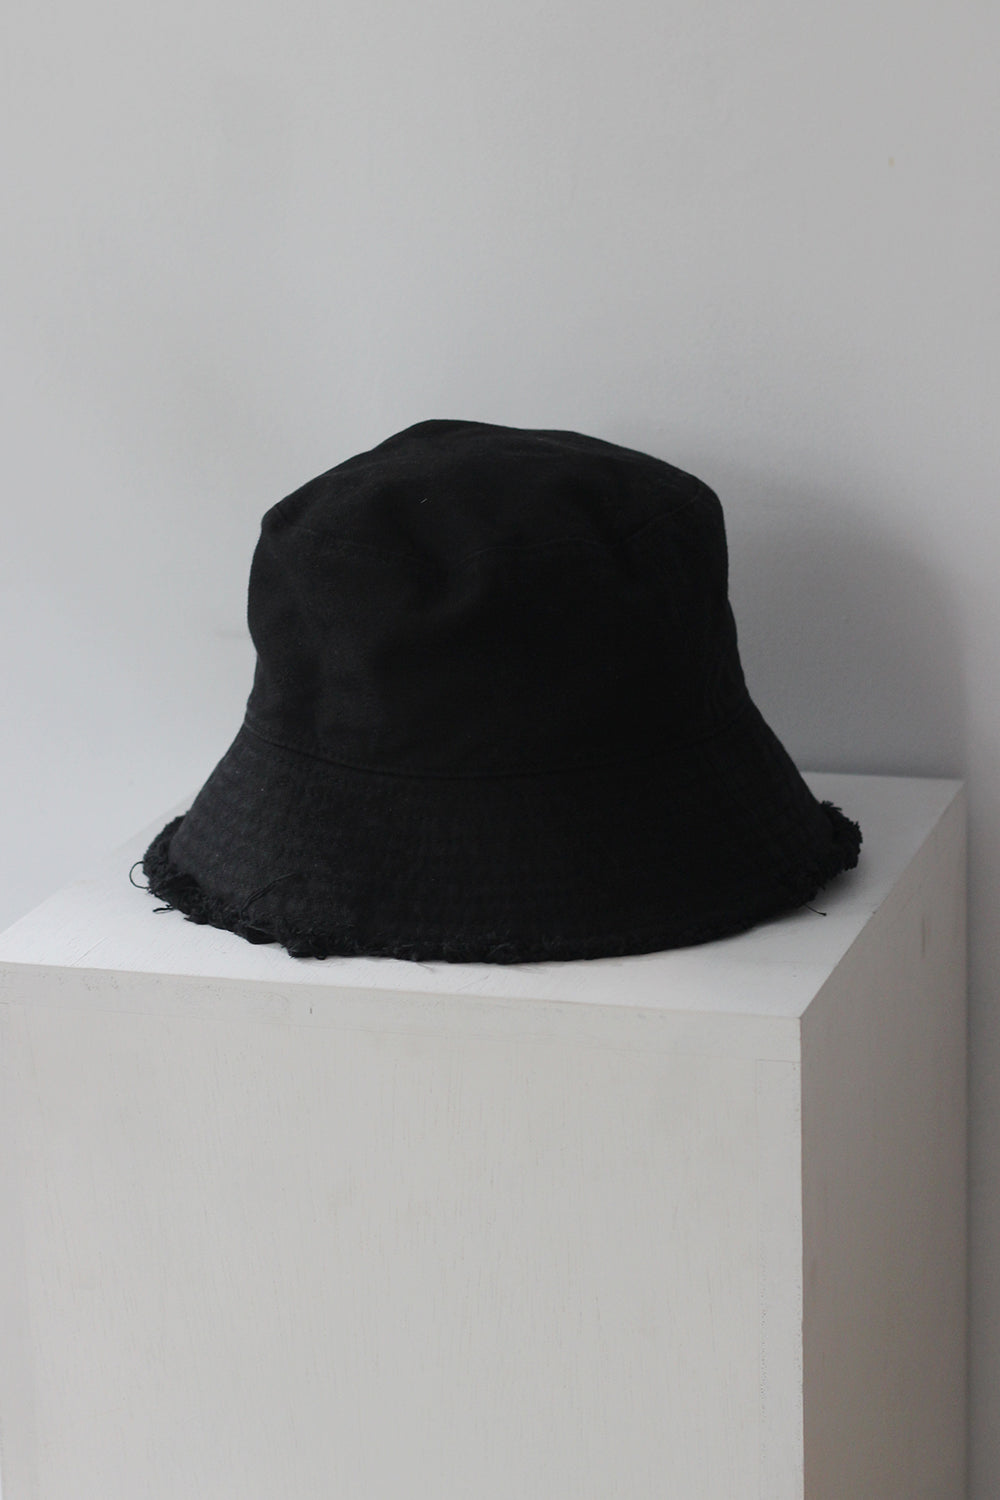 UNUSED "10oz denim hat" (black)